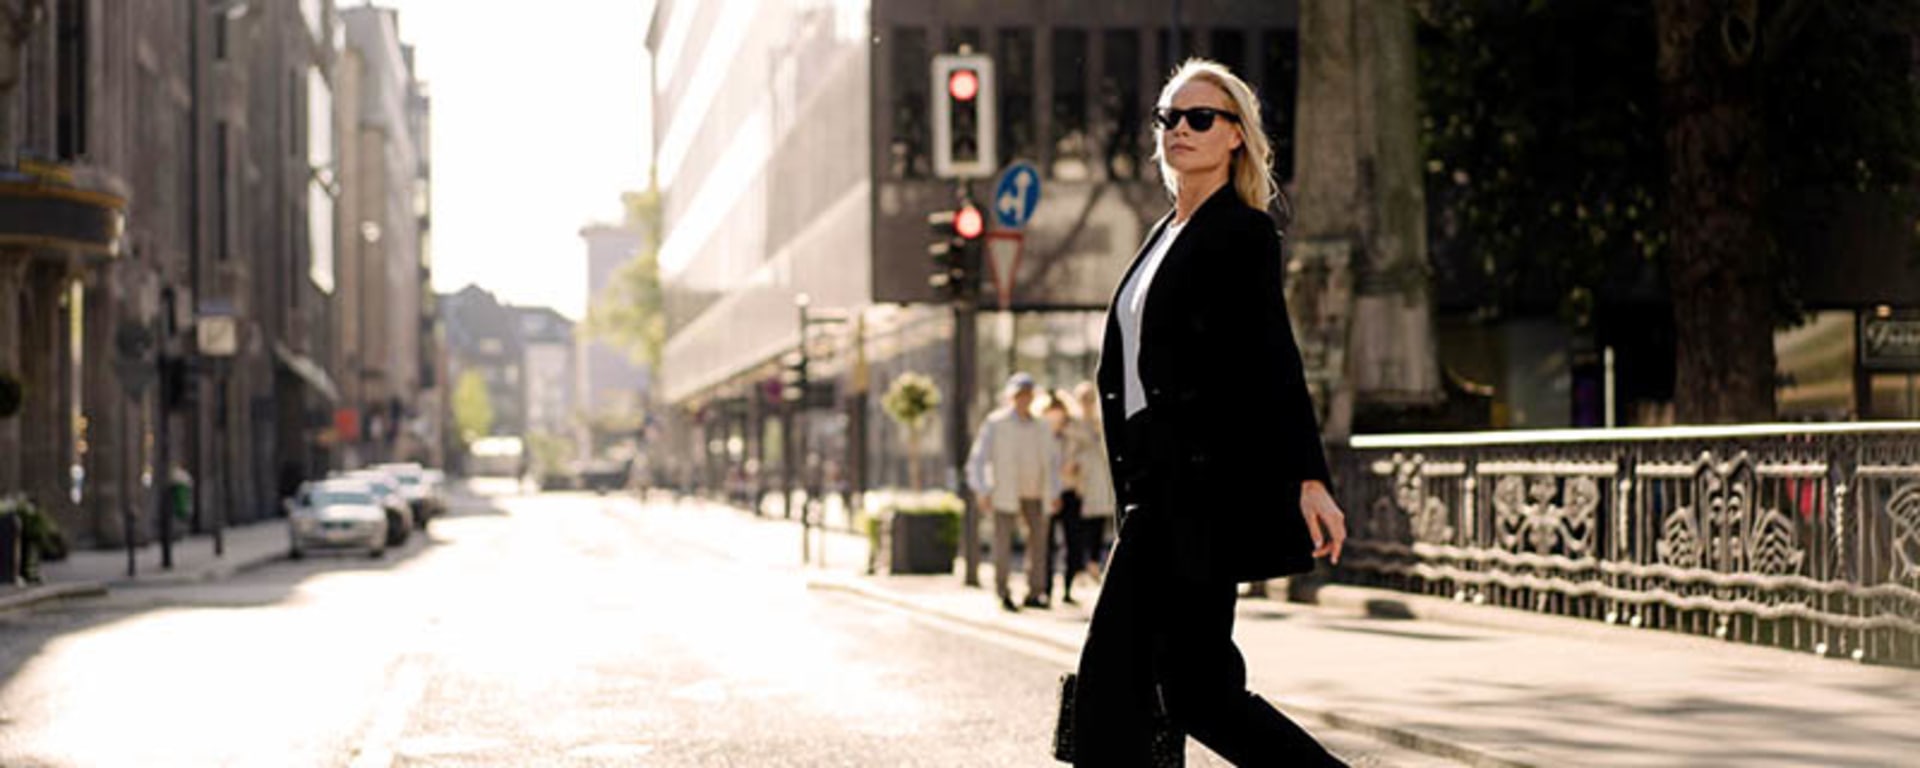 Une femme en tailleur noir et lunettes de soleil traverse une rue avec assurance.